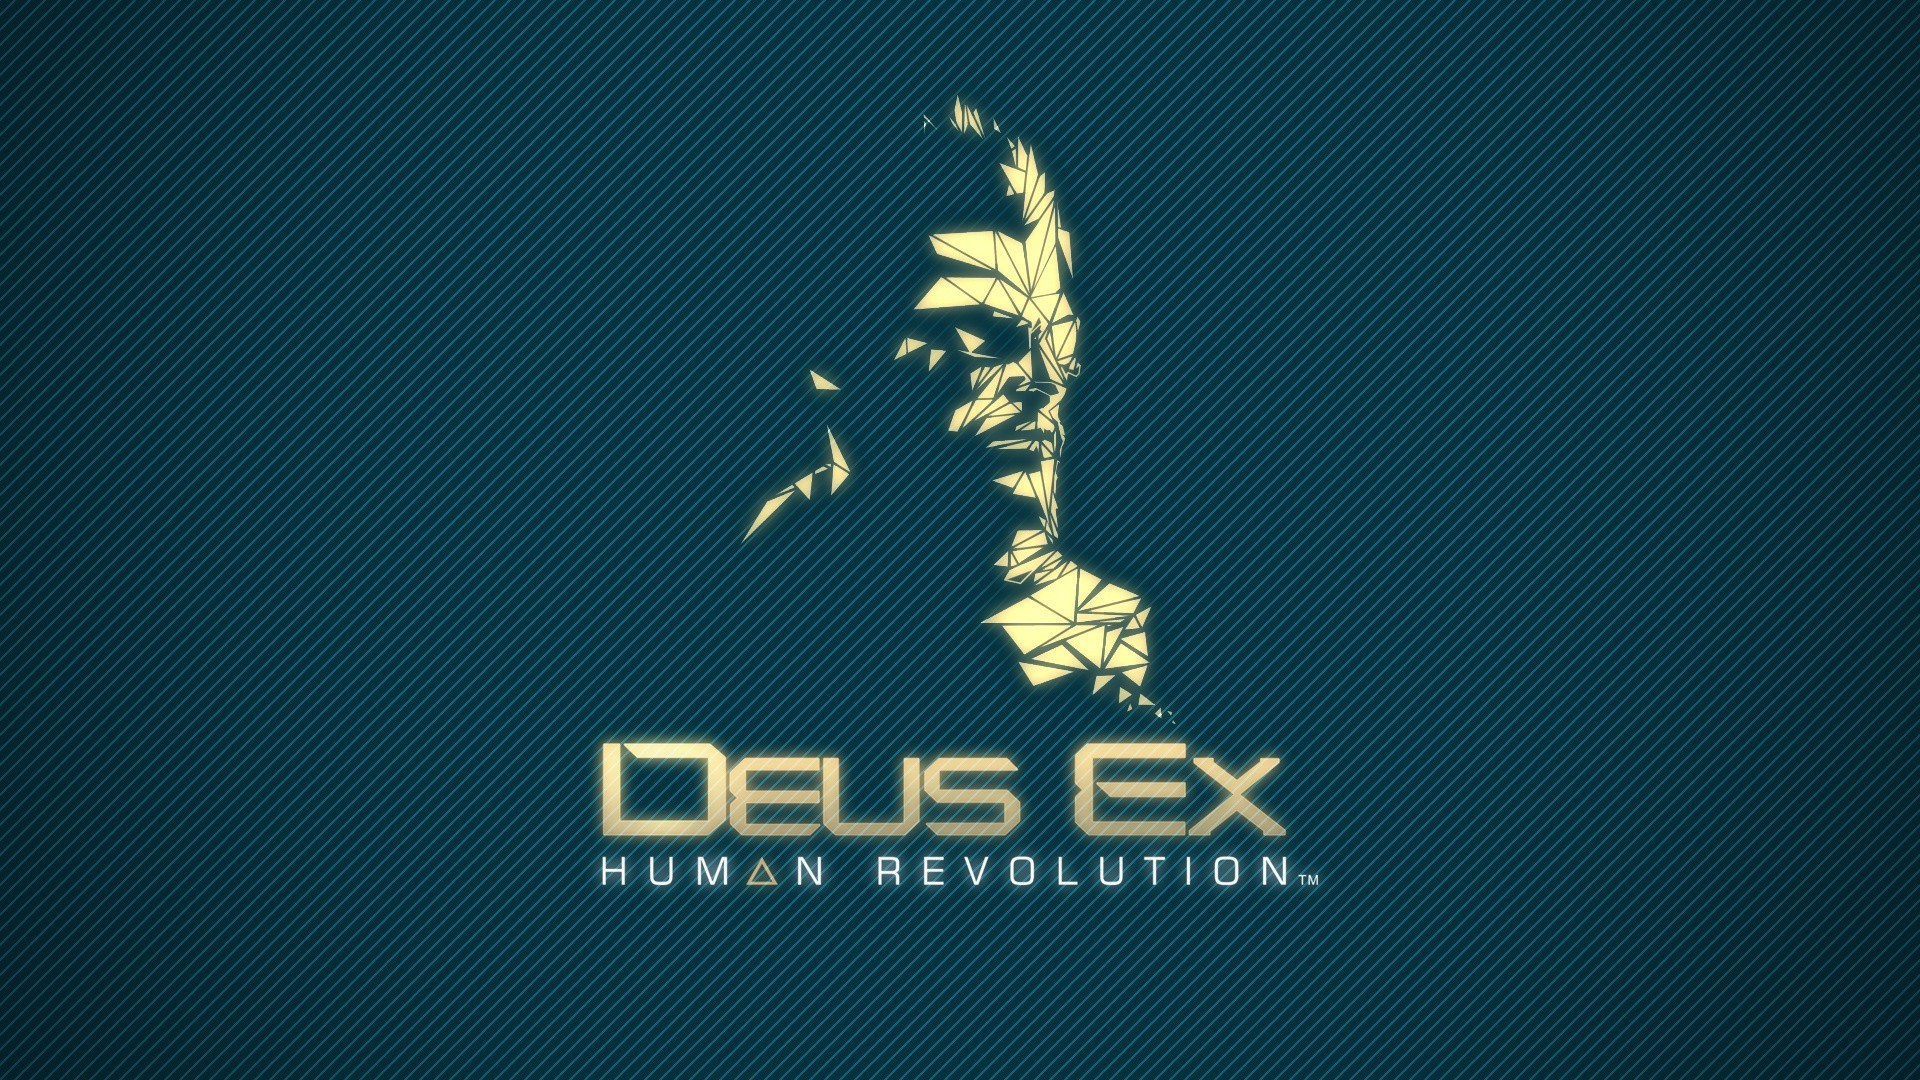 Deus Ex: Human Revolution, Video Games Wallpaper